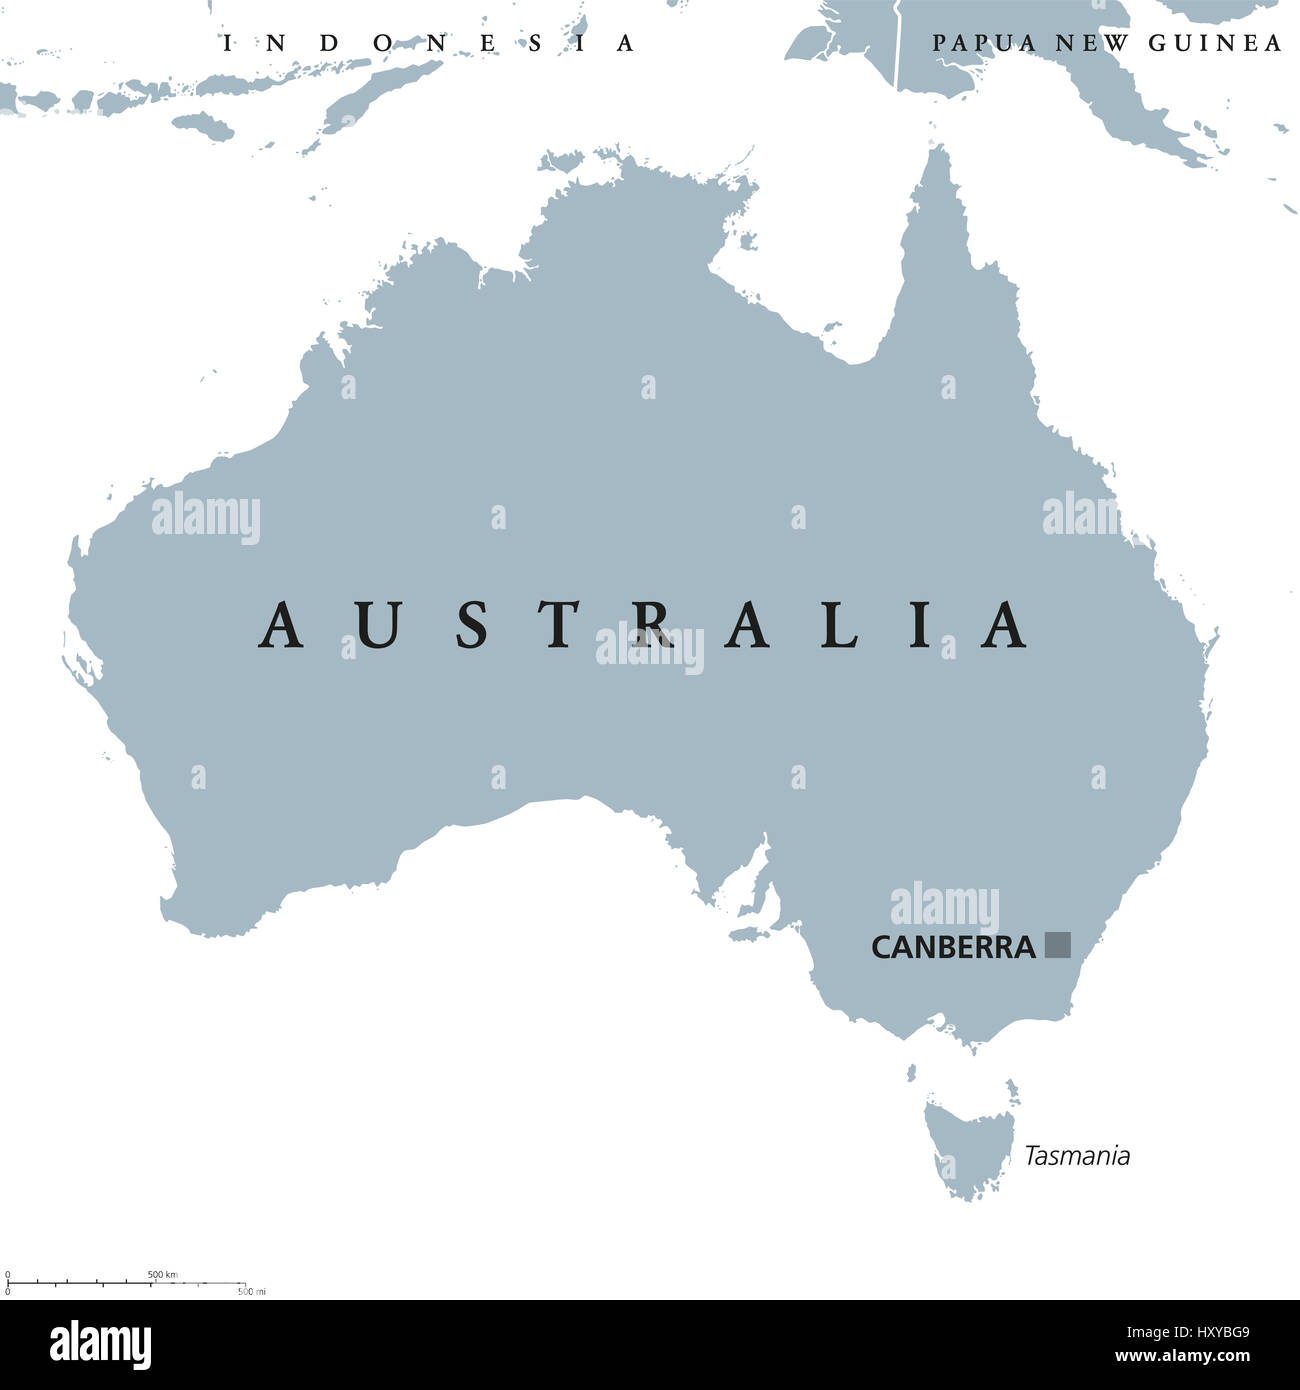 Carte politique de l'Australie avec Canberra capital. Pays et du Commonwealth, la terre ferme du continent australien et la Tasmanie. Gris illustration. Banque D'Images